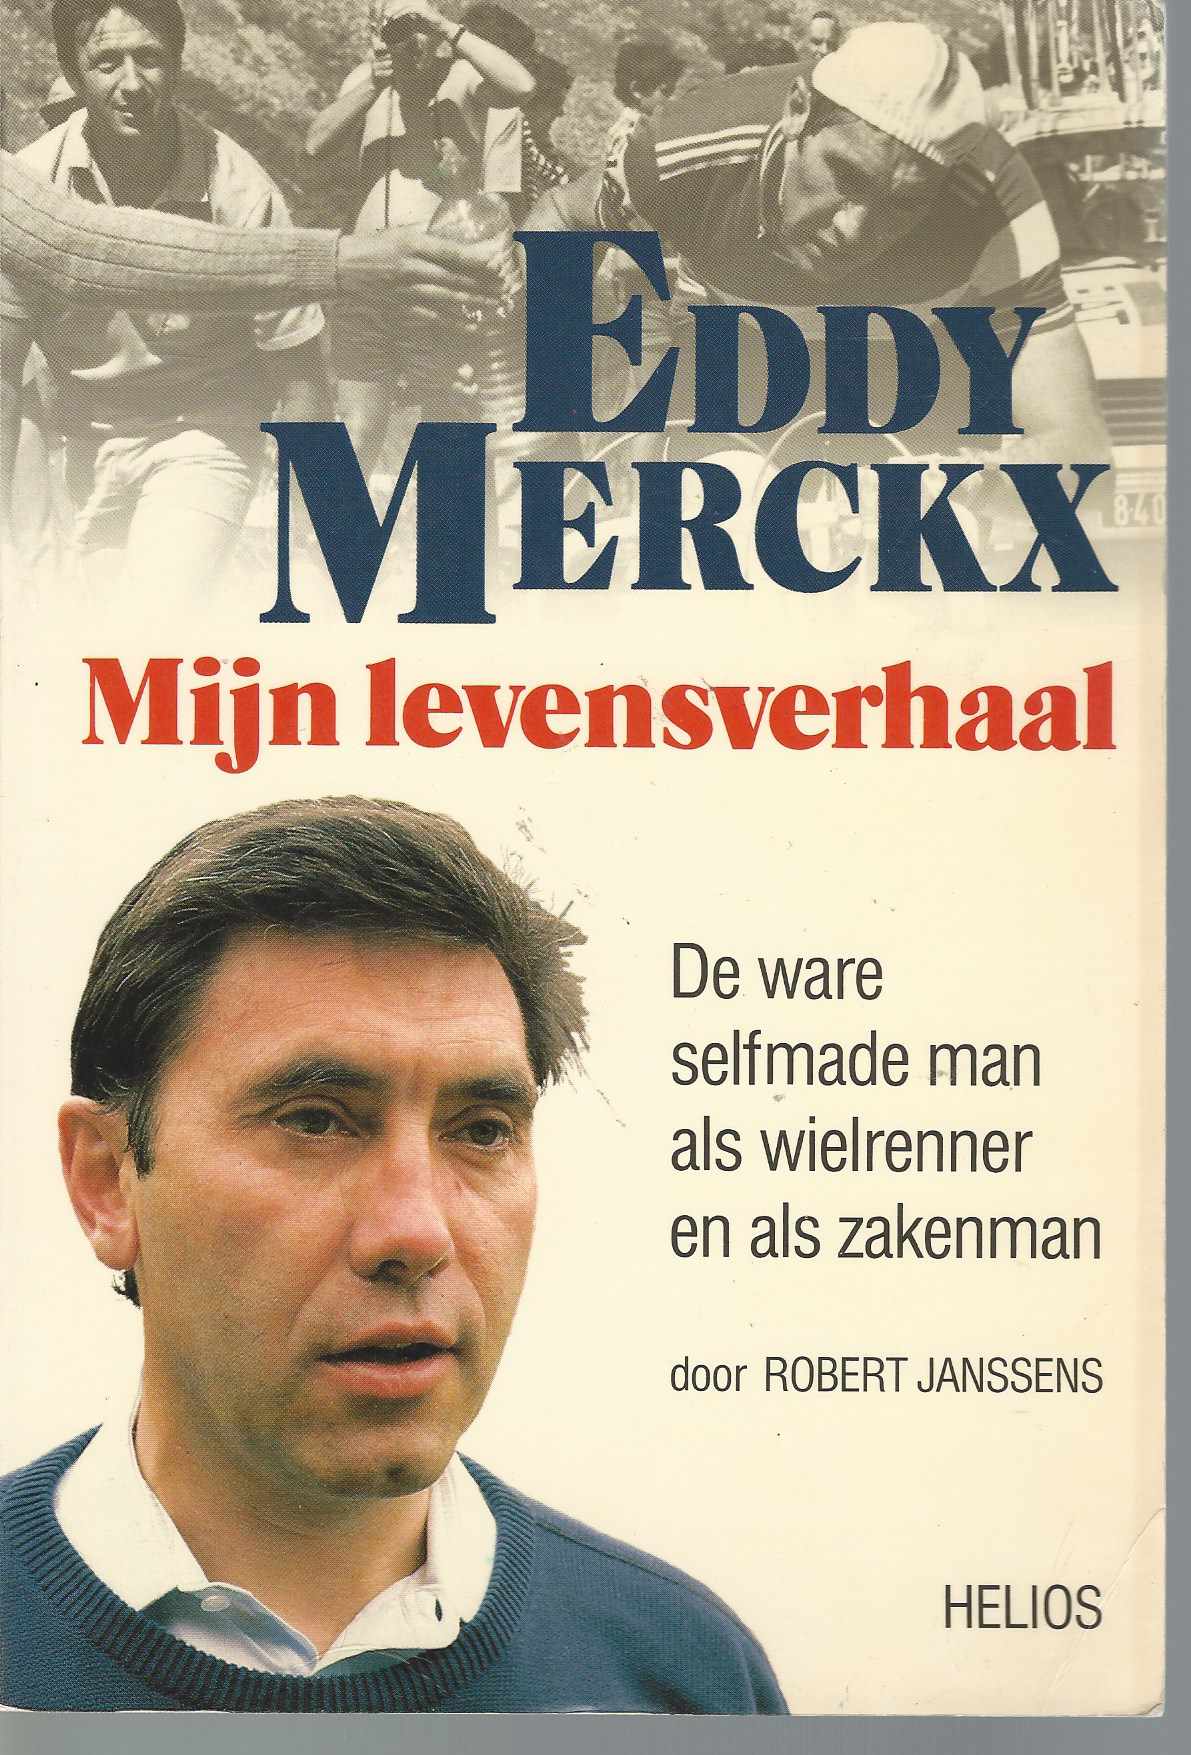 Janssens, Robert - Eddy Merckx - Mijn levensverhaal -De ware selfmade men als wielrenner en als zakenman.